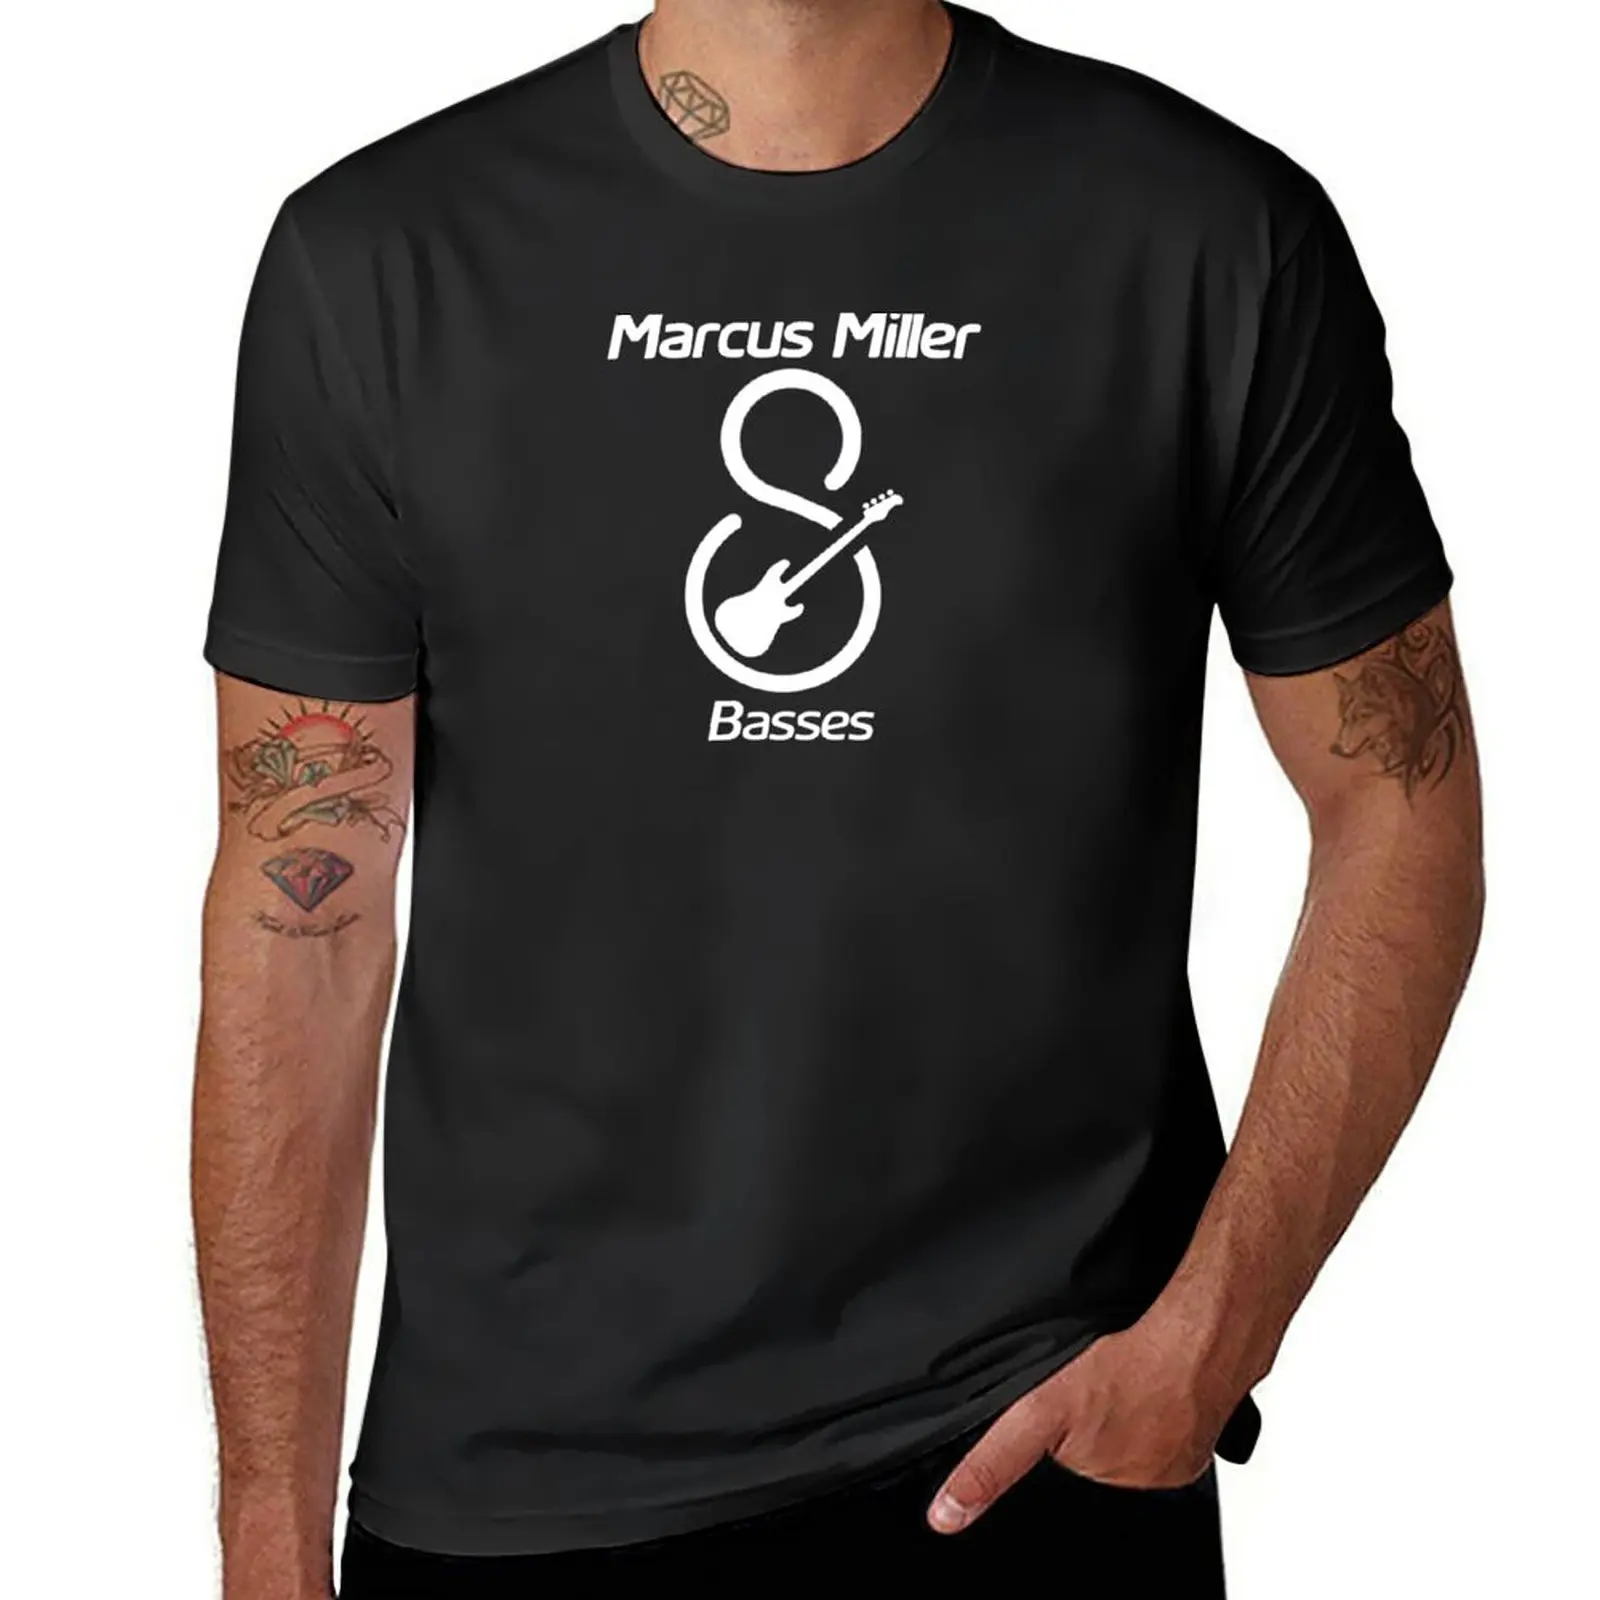 Новая футболка Sire Marcus Miller Basses, быстросохнущая футболка, графические футболки, футболки в тяжелом весе для мужчин